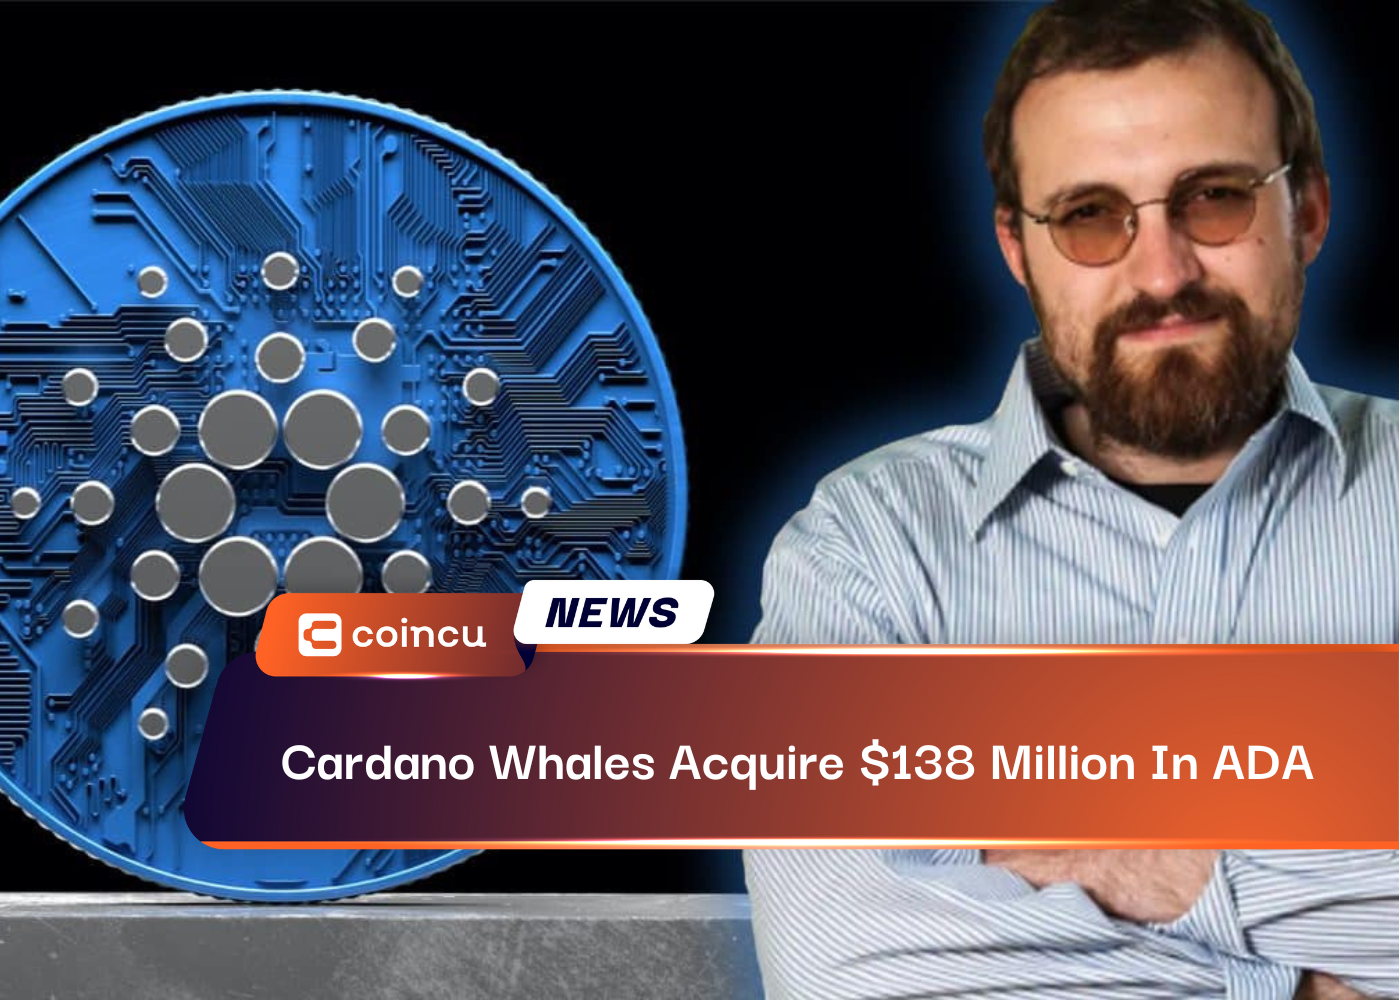 Cardano Whales Acquire $138 Million In ADA